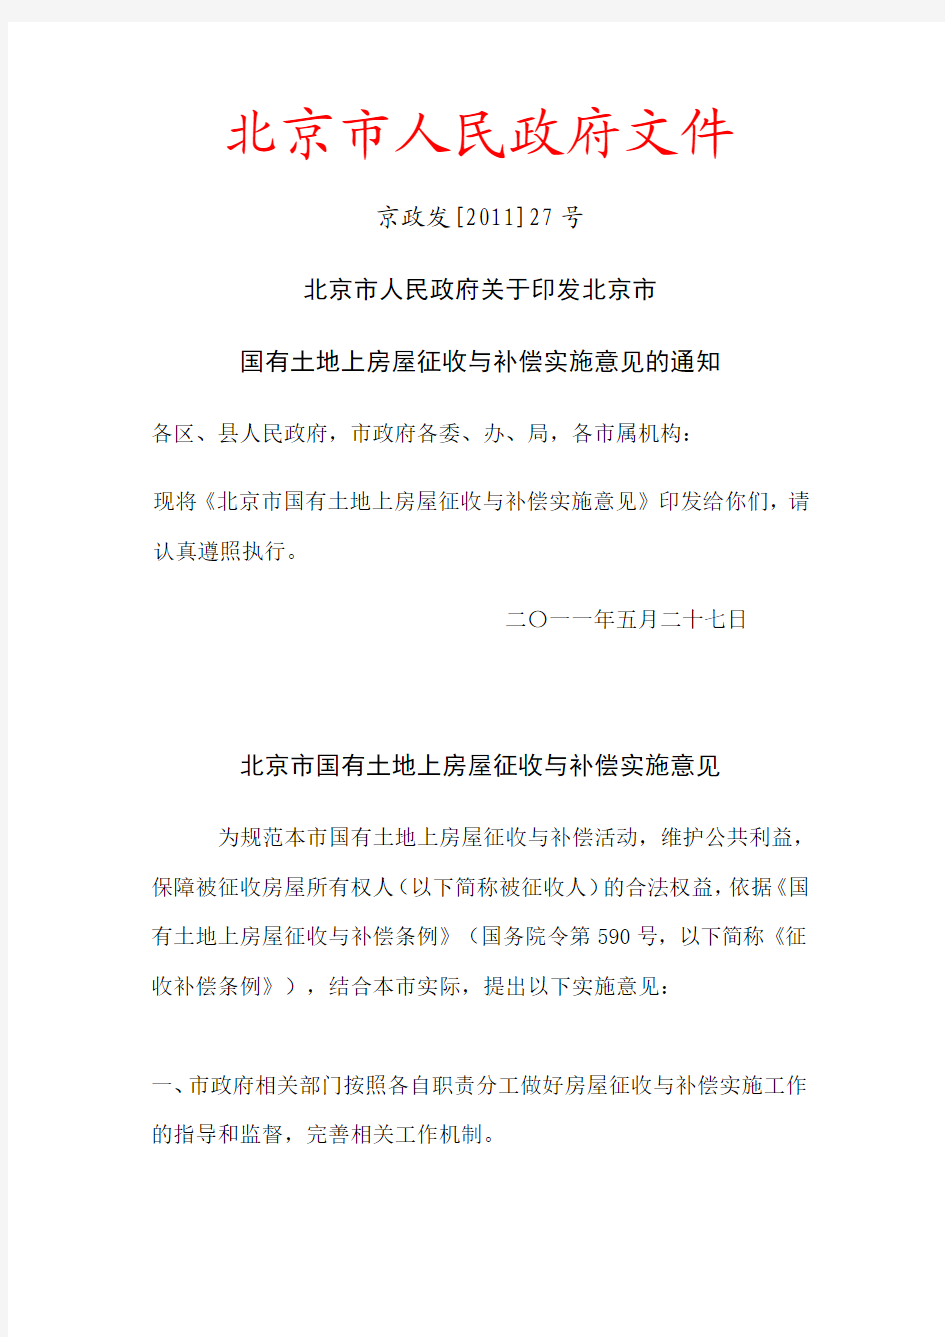 北京市人民政府文件